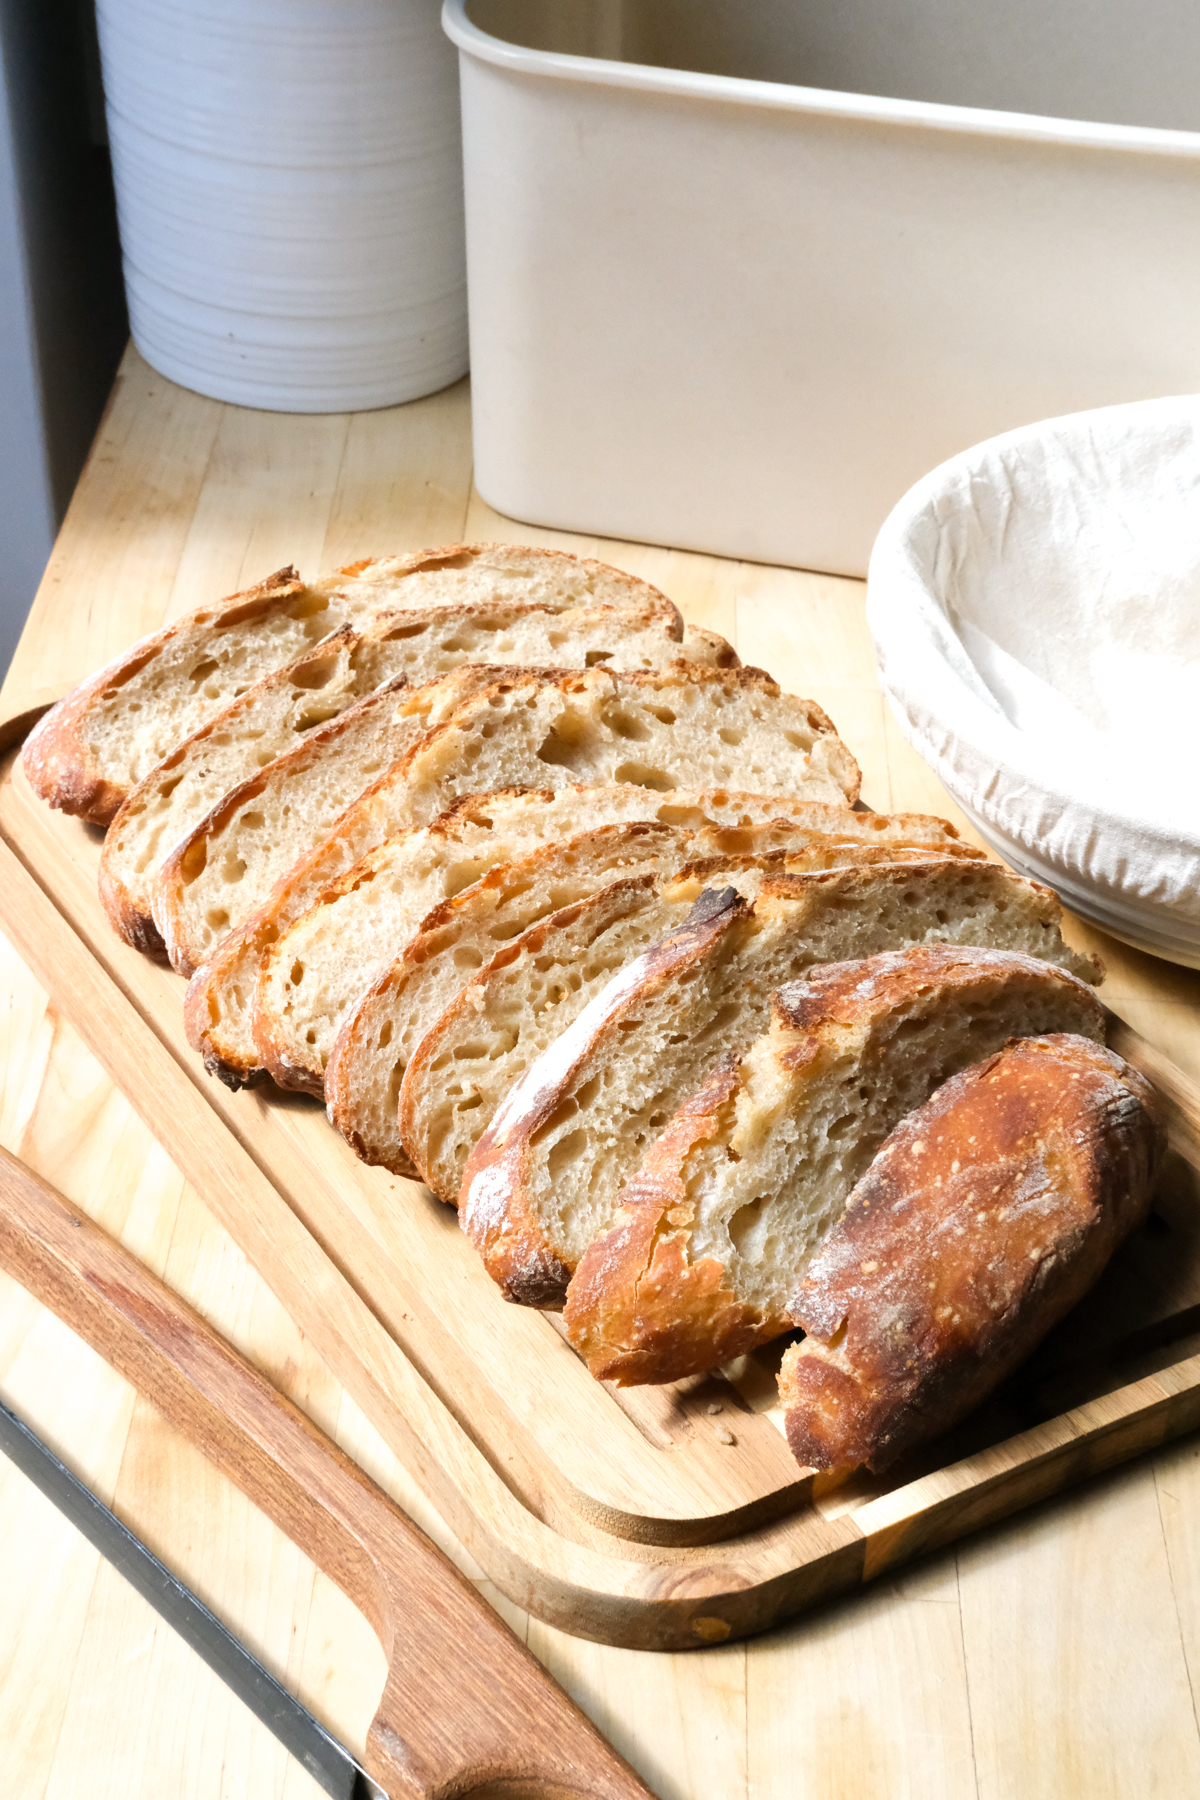 https://www.kierstenhickman.com/wp-content/uploads/2020/09/sourdough-bread-kit.jpg